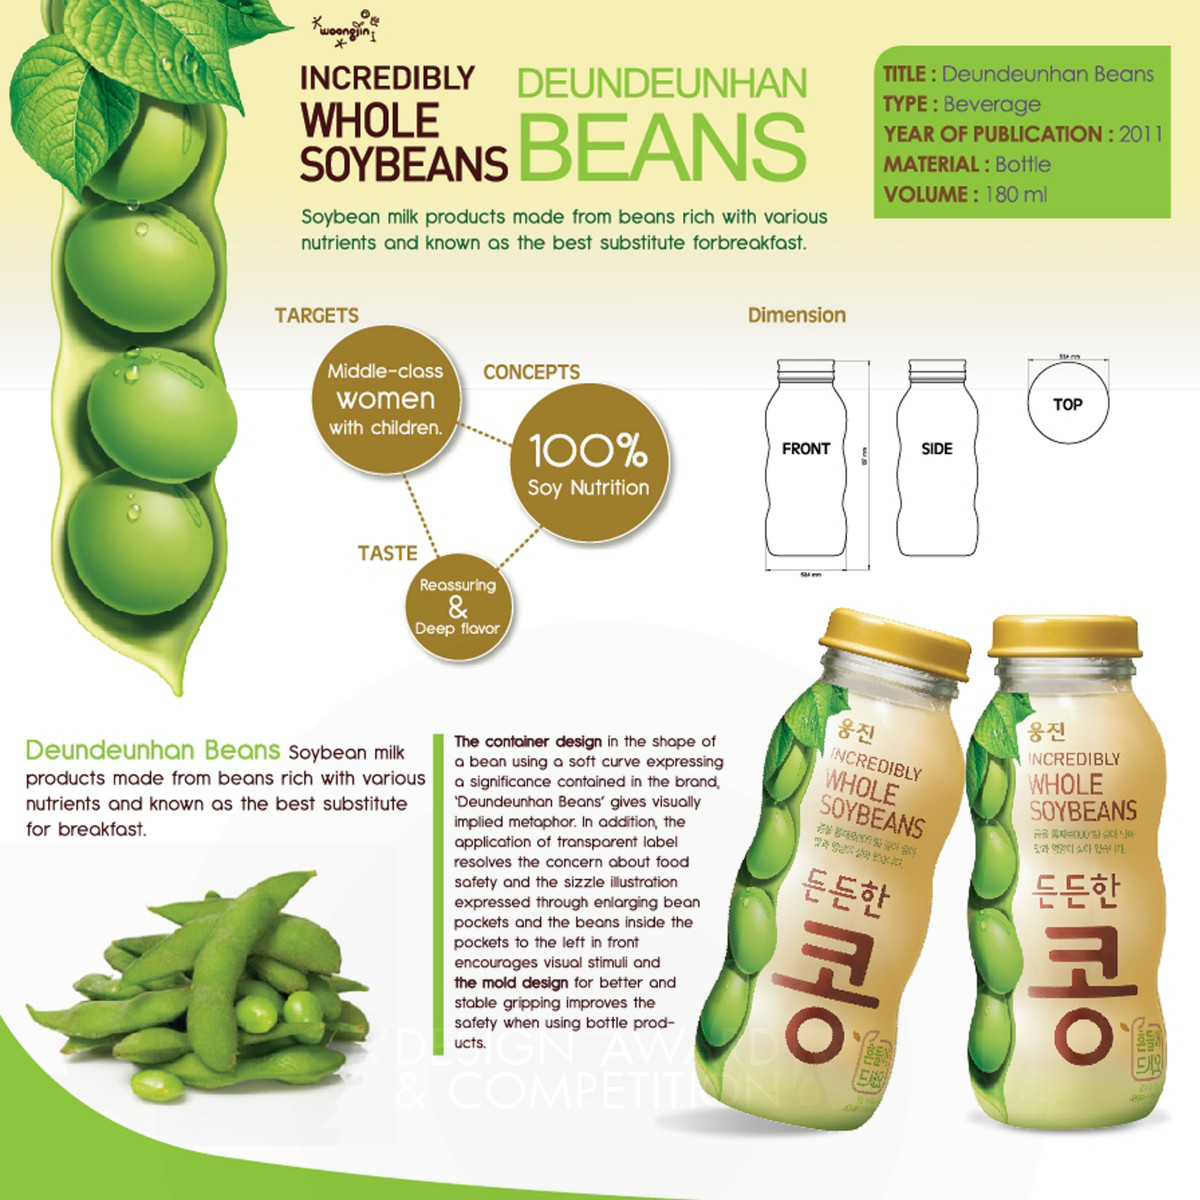 Deundeunhan Beans beverage by Woongjin Food Design Team